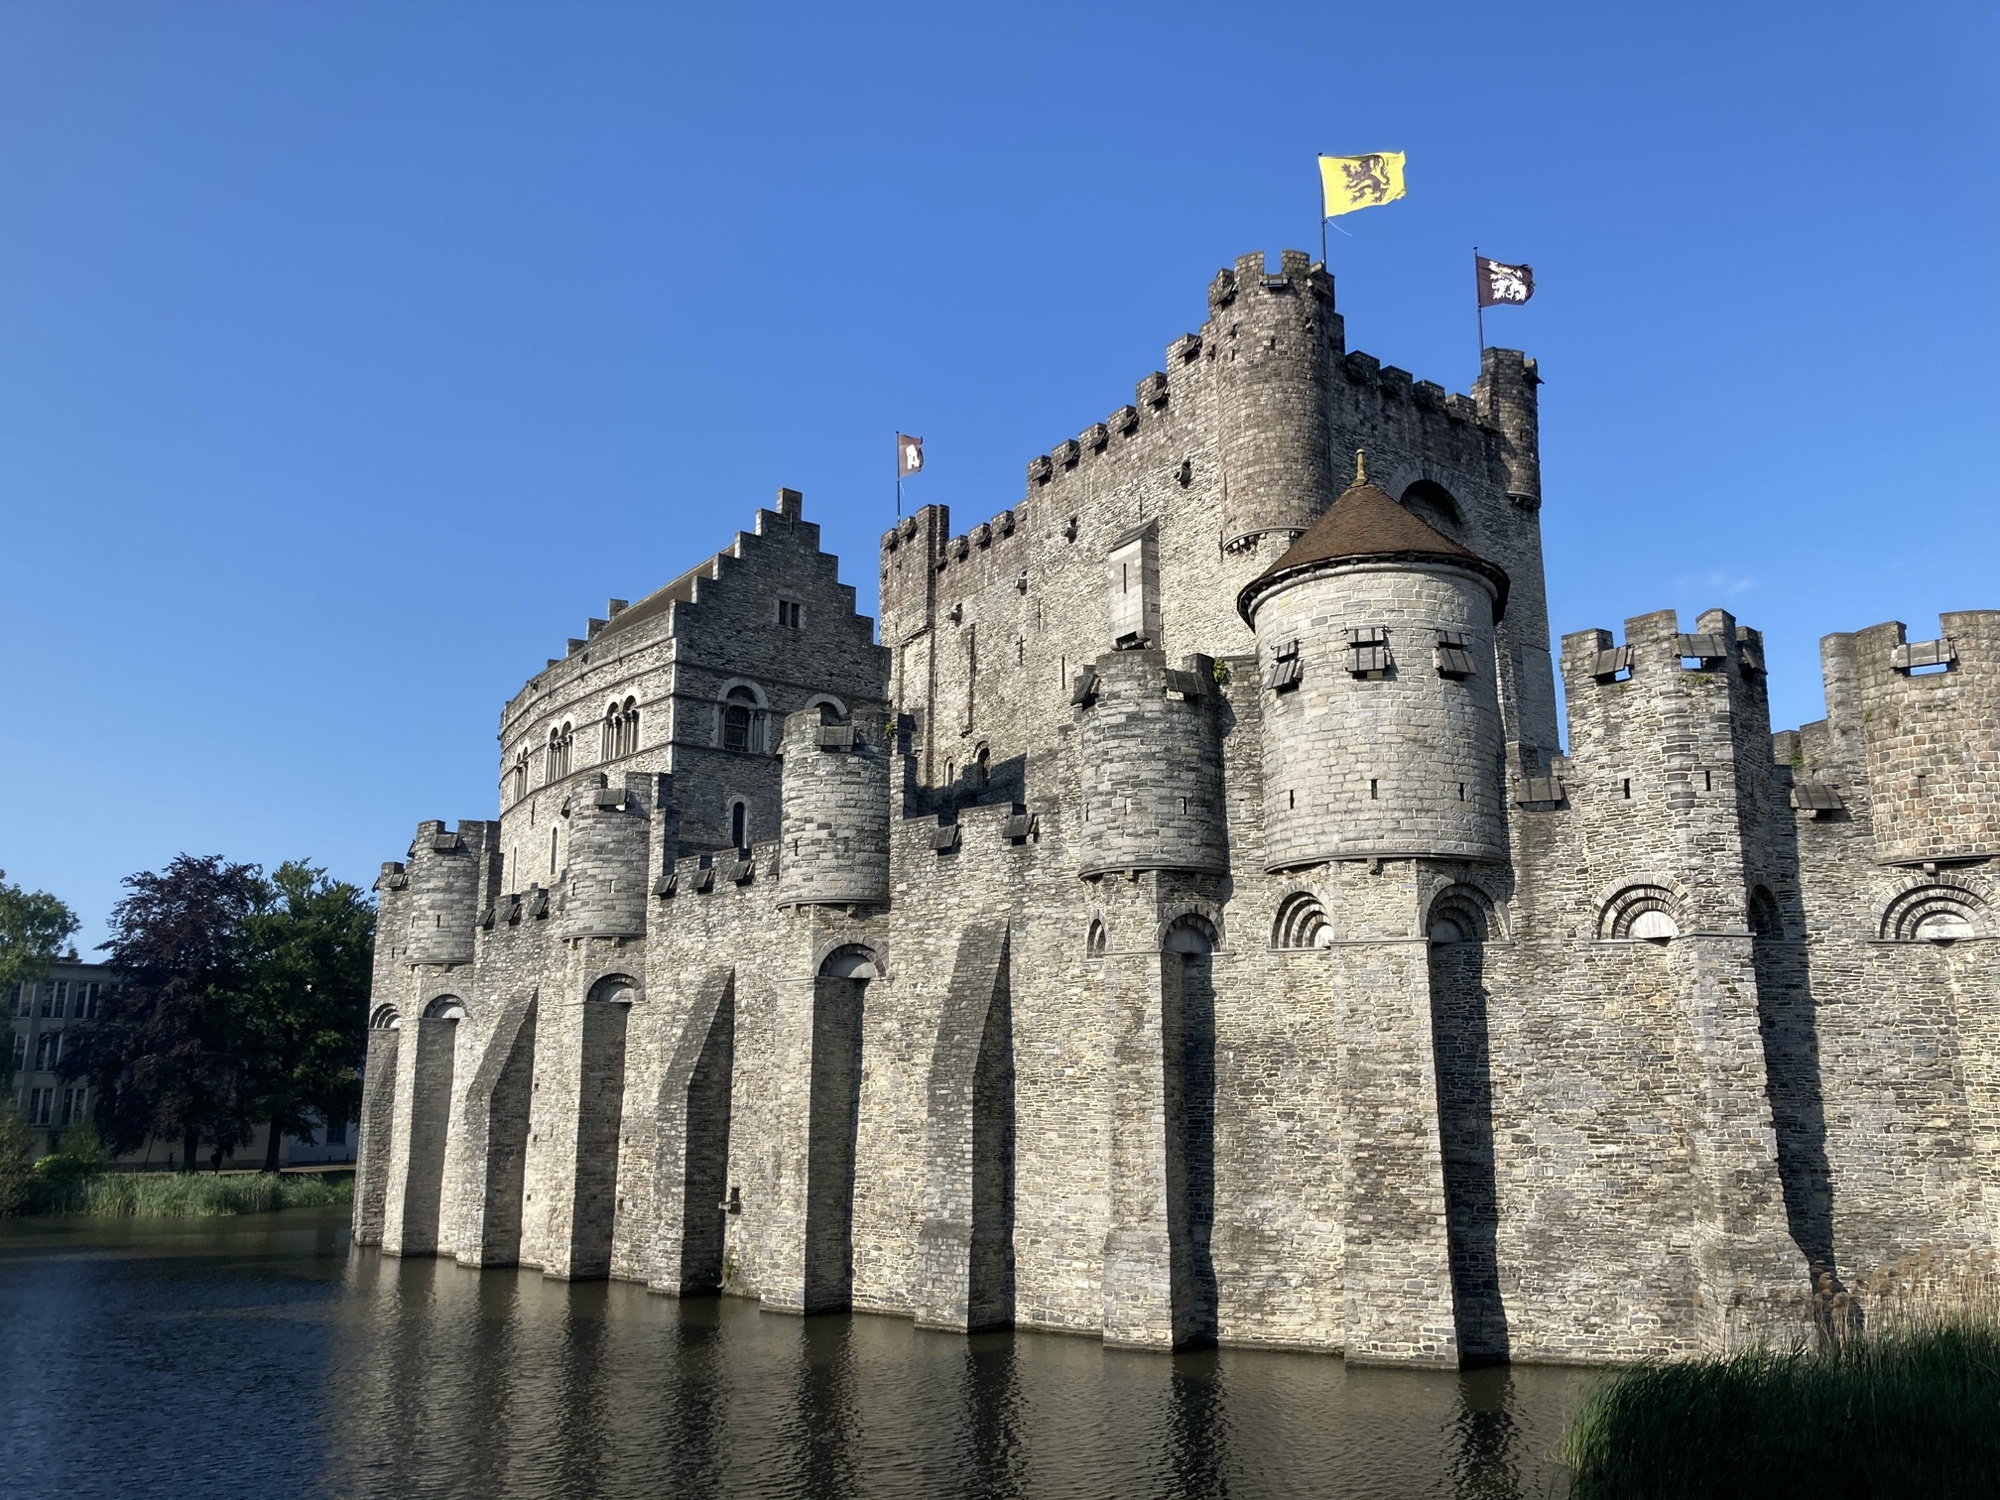 Burgmauern ragen aus dem Wasser empor, die Wände enden oben in Wachtürmen mit Schießscharten, auf dem Gebäude dahinter wehen gelbe und schwarze Flaggen, die das Stadtwappen zeigen